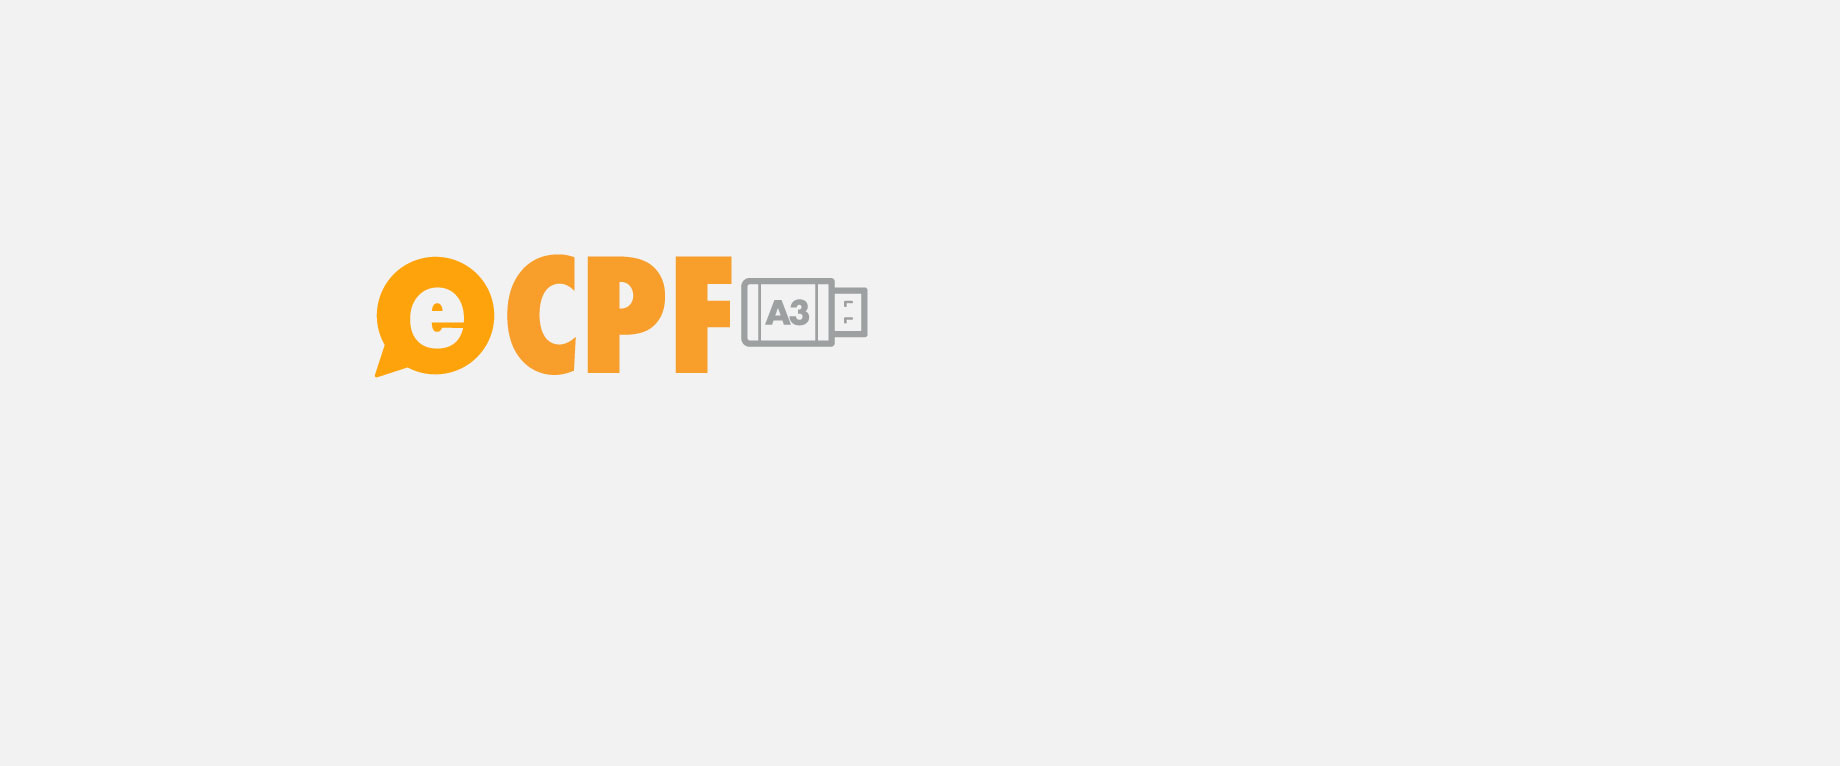 certipass certificado e-CPF - no token - 12 meses image number 0